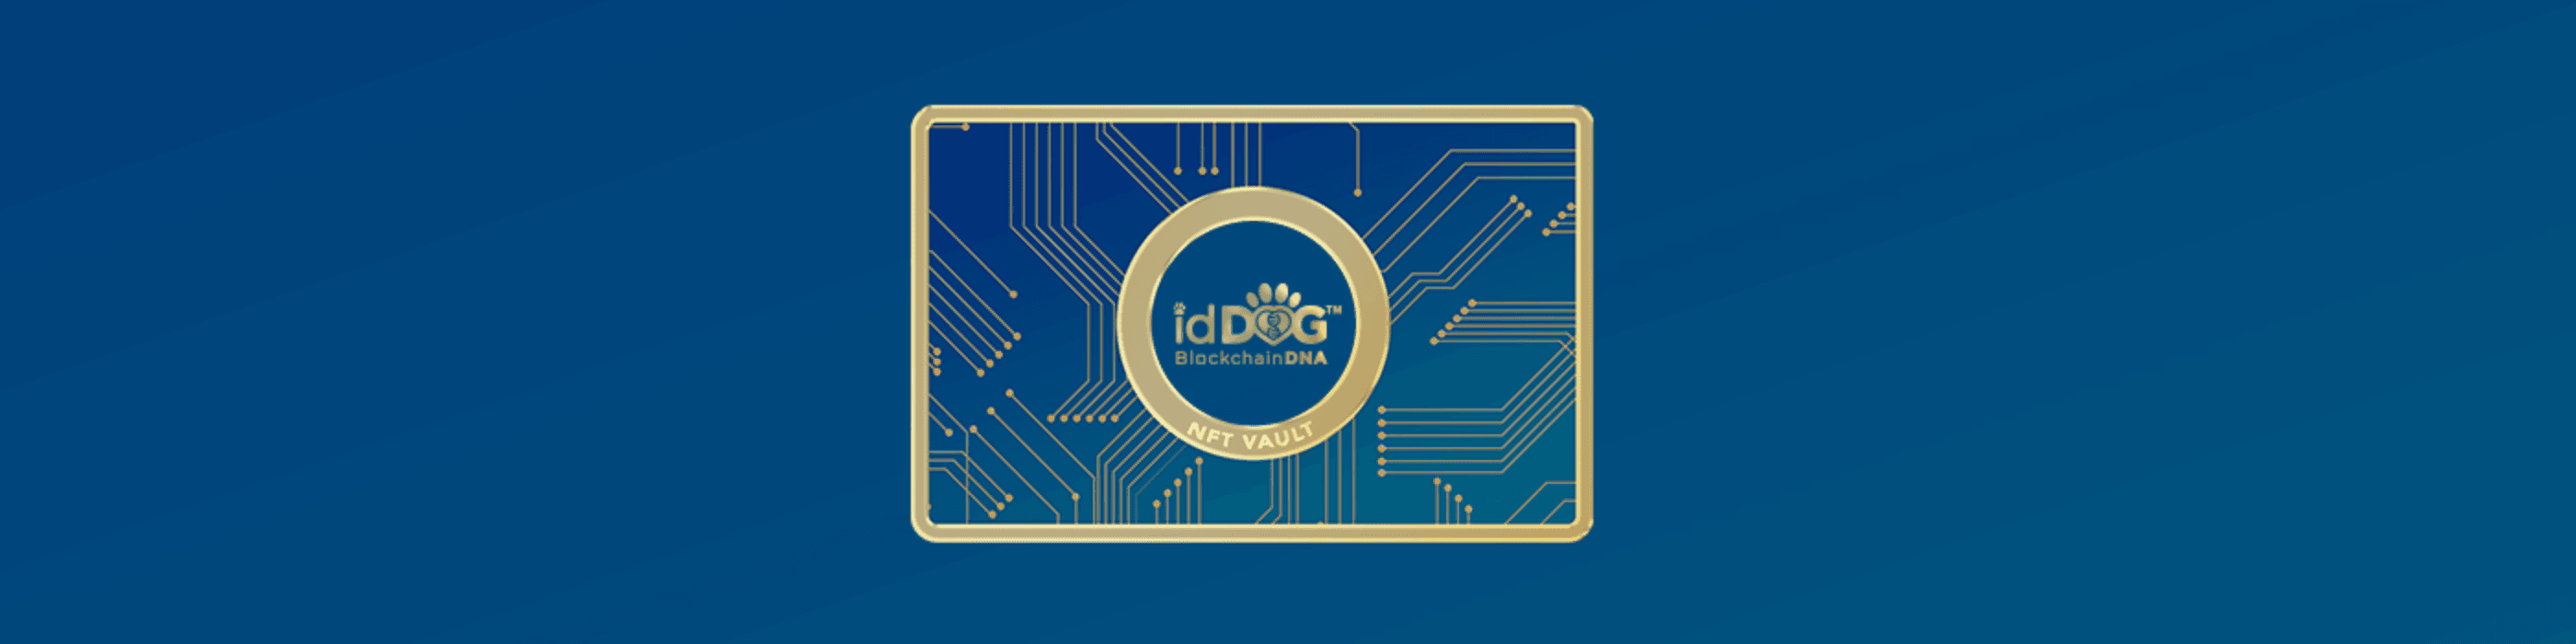 idDOG_Labs banner